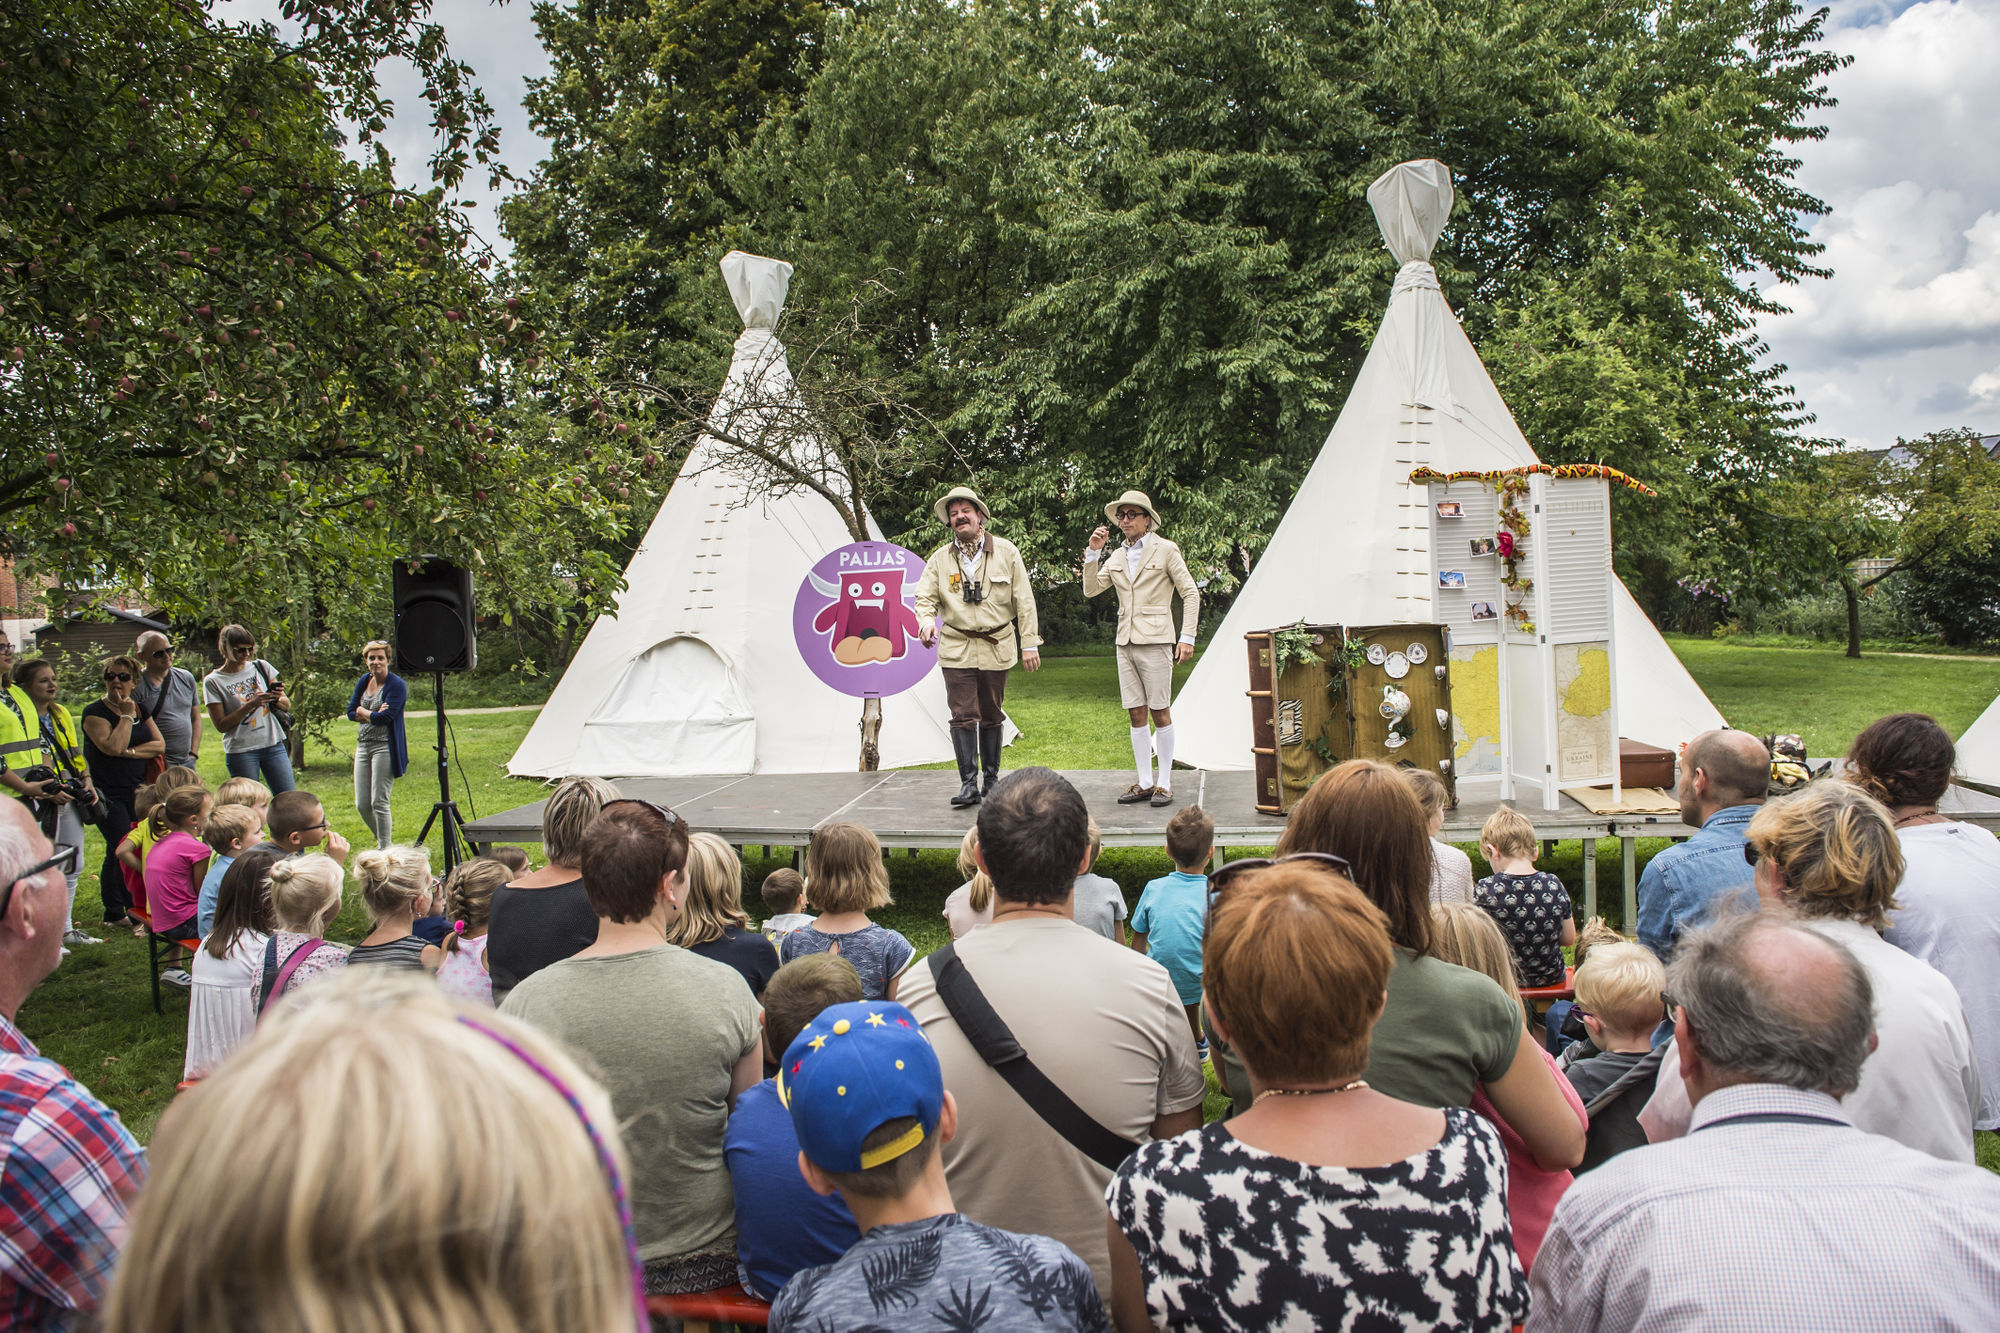 Eerste editie van Bilzers kinderfestival Tureluurs lokt 8.500 bezoekers